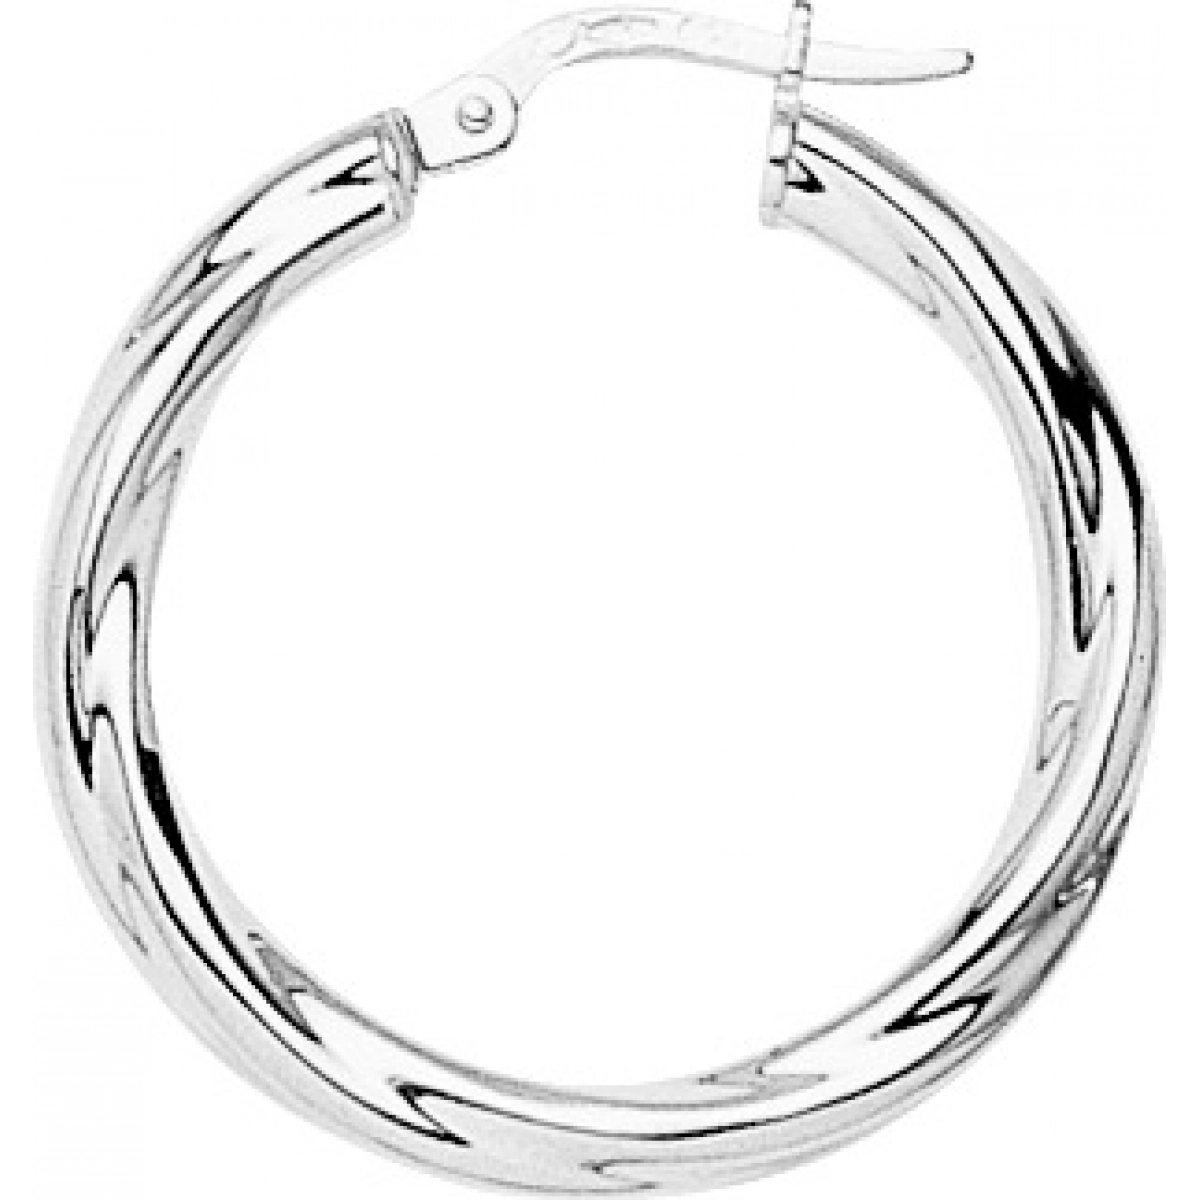 Hoops earrings pair 9K WG  Lua Blanca  651004.3.0